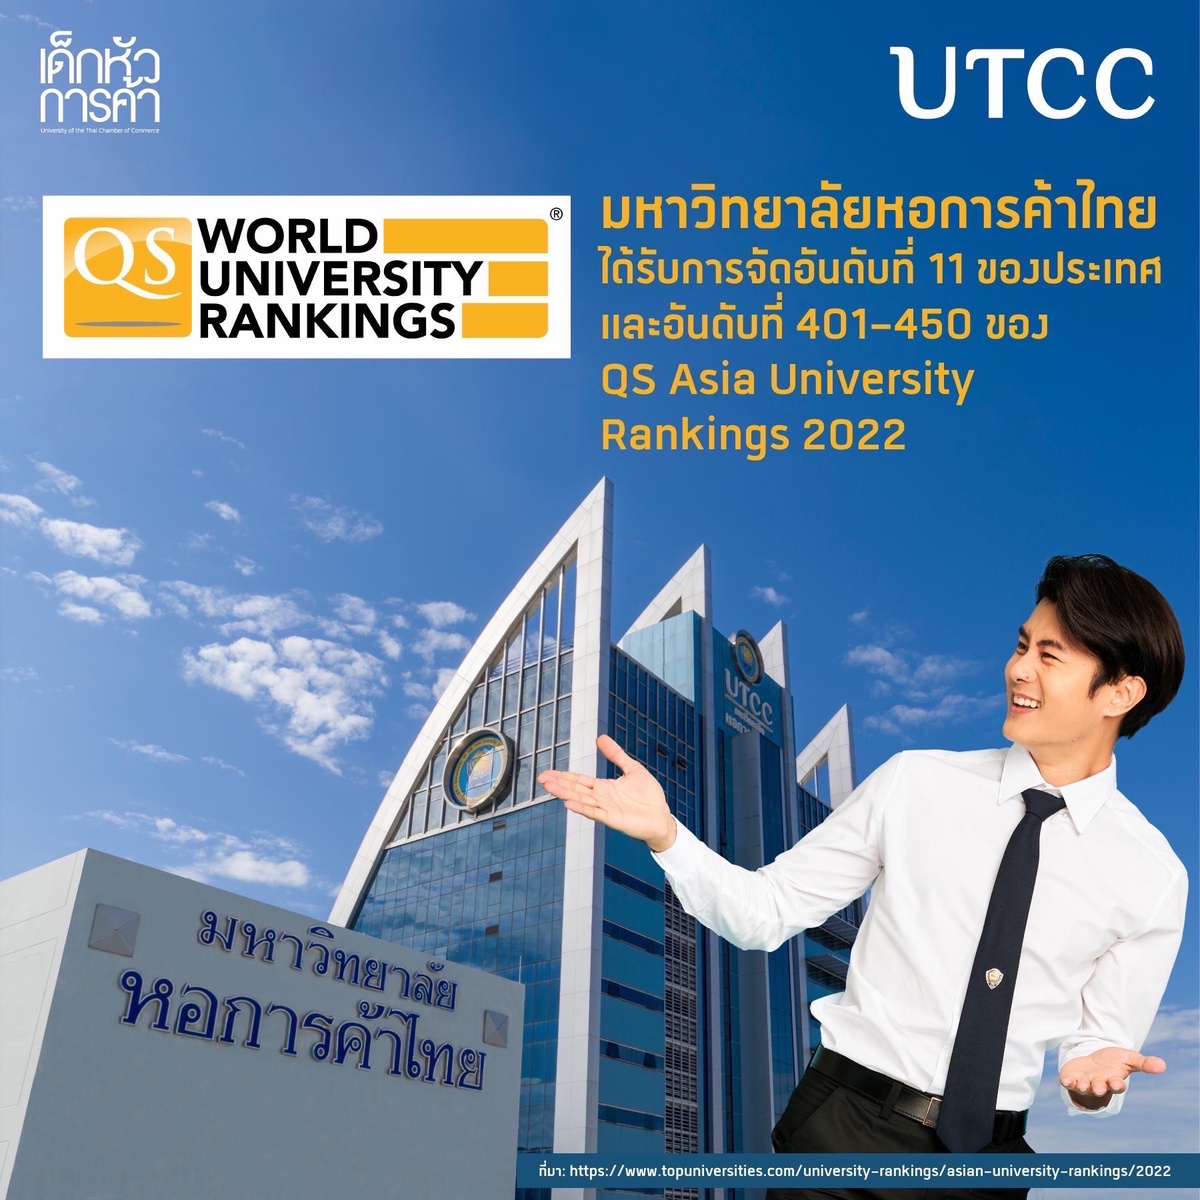 มหาวิทยาลัยหอการค้าไทย UTCC ได้รับการจัดอันดับที่ 11 ของประเทศ